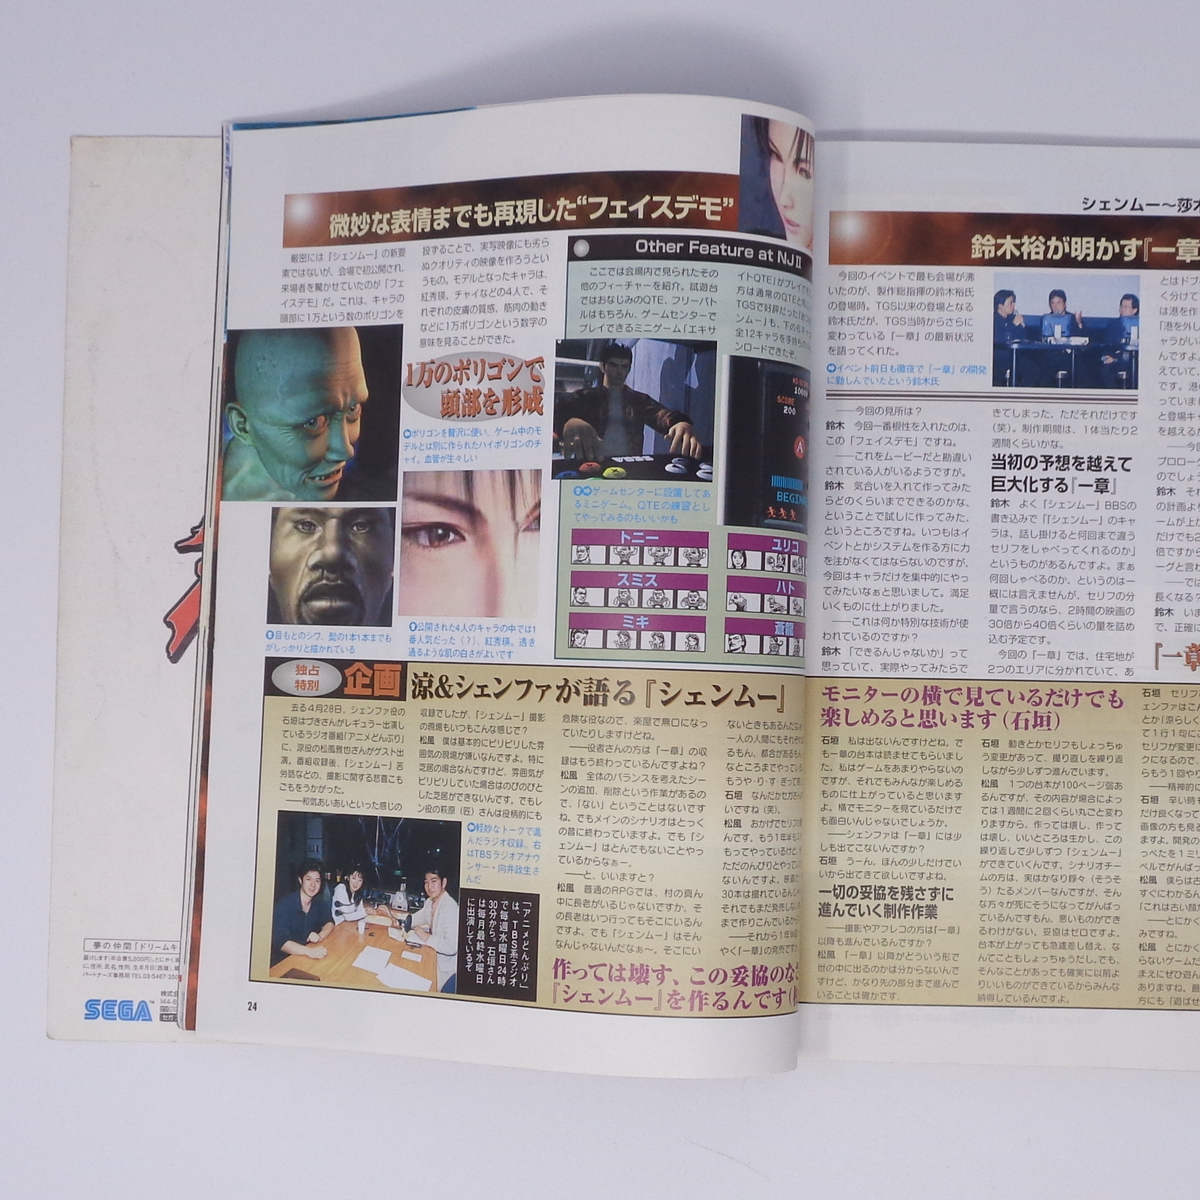 ドリームキャストFAN 1999年5月28日号 No.11 /セガCM戦略再検証/シーマン/フレンズ/DreamCast FAN/ゲーム雑誌[Free Shipping]の画像10